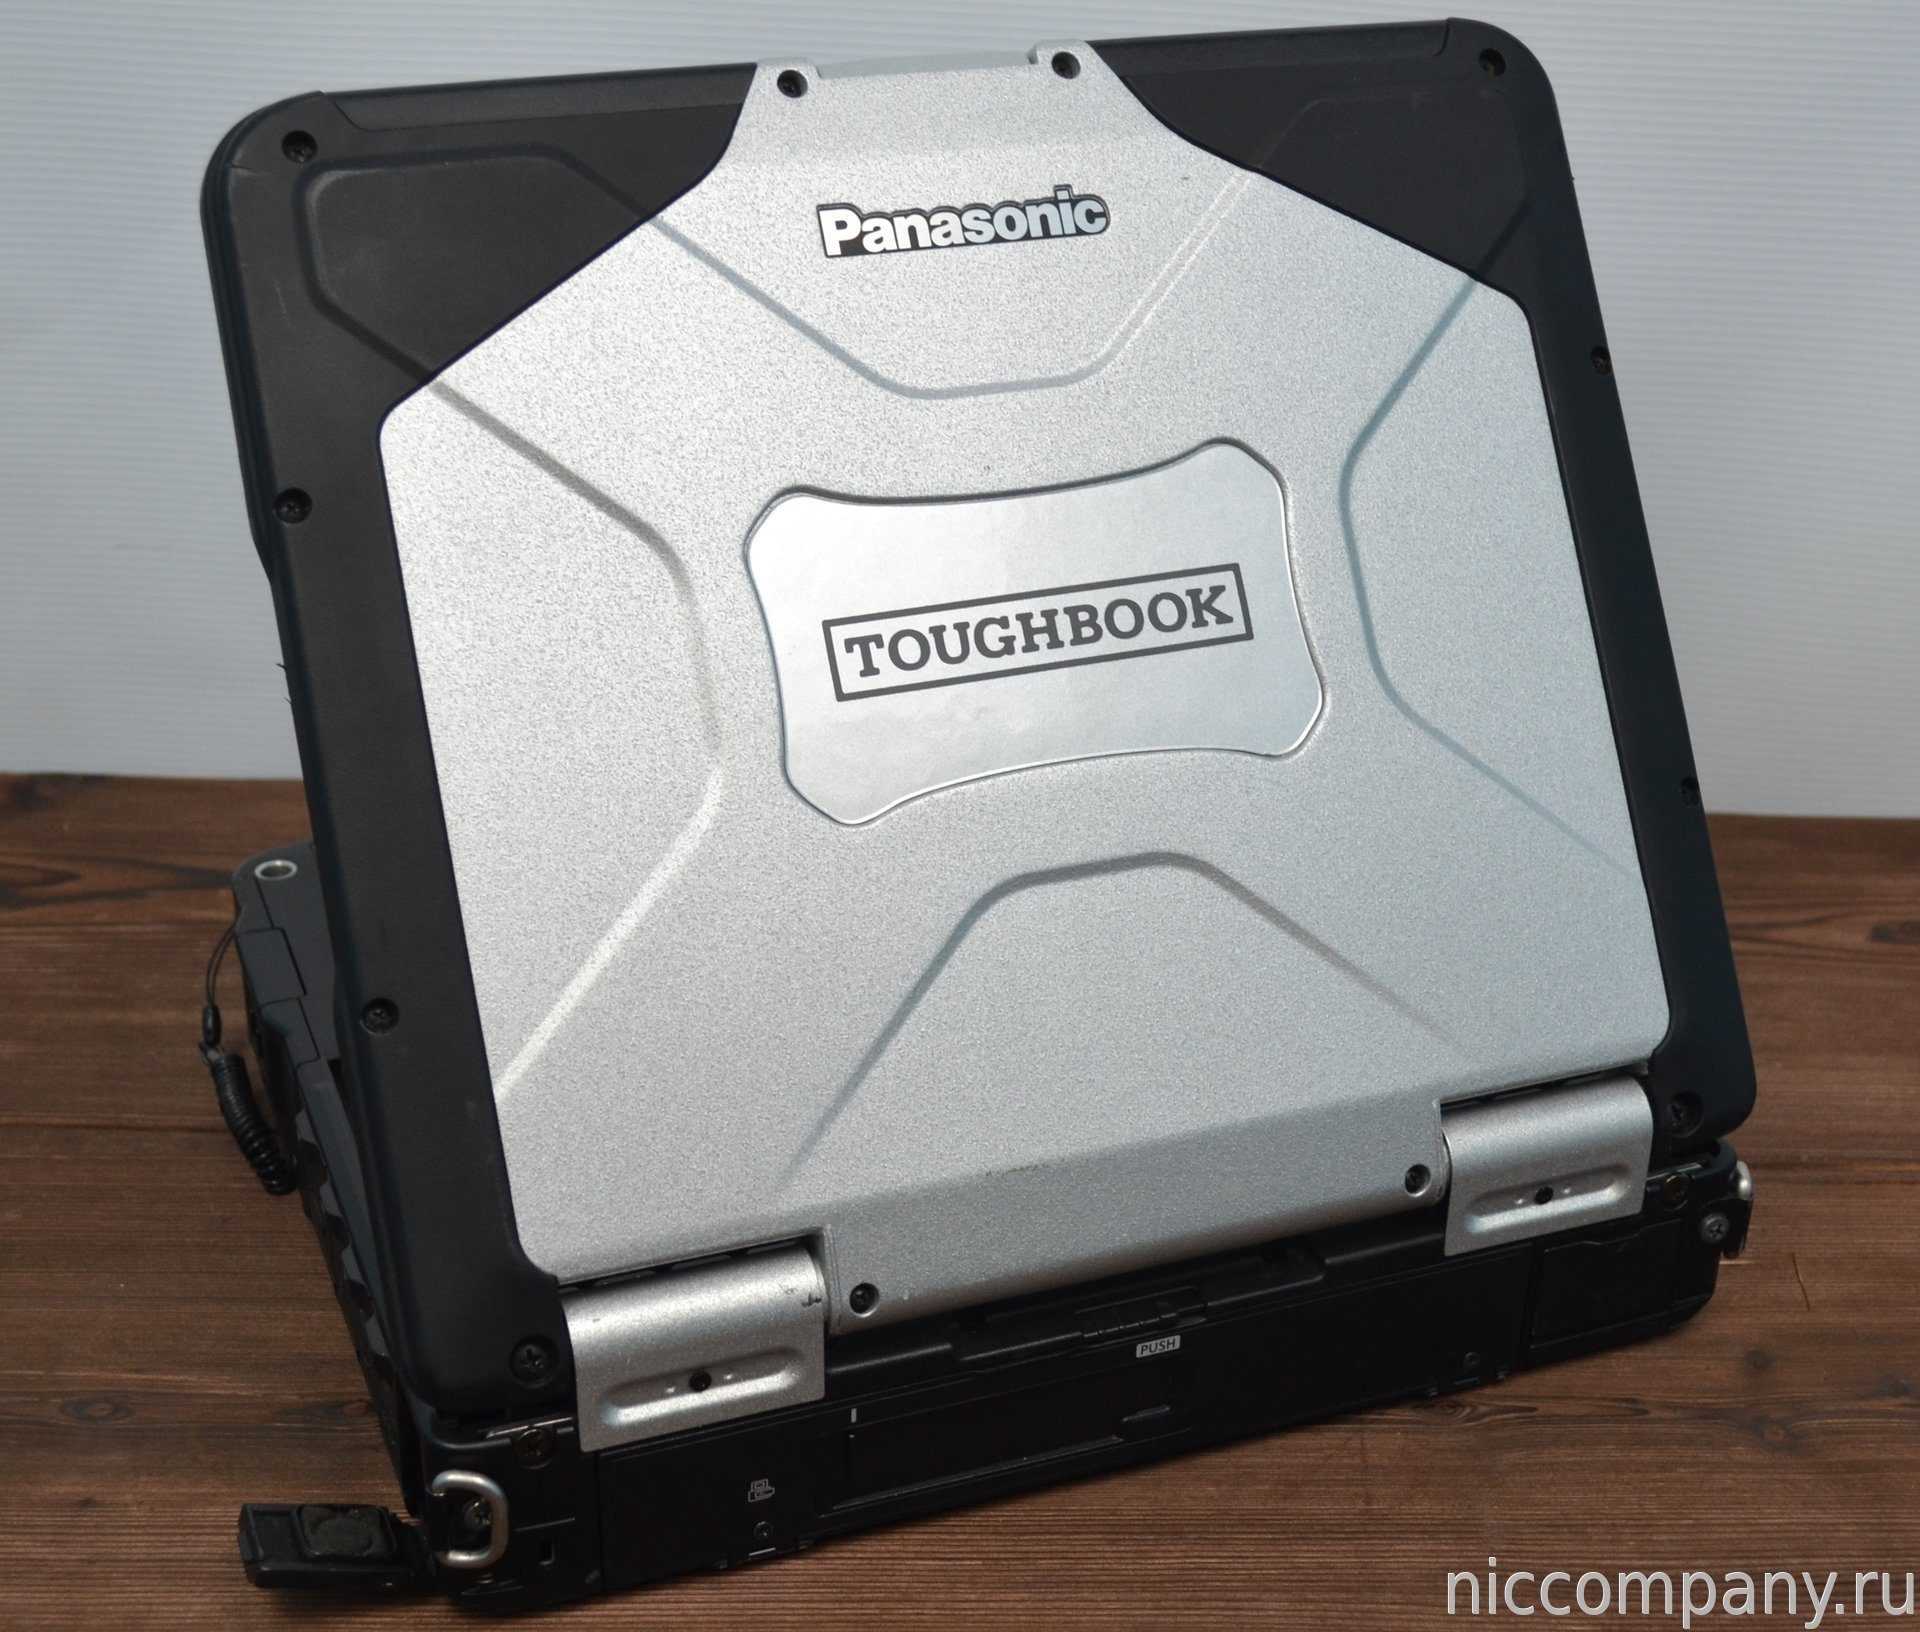 Panasonic toughbook cf-31 mk5, cf-314b600n9 купить от 250700 руб в екатеринбурге, сравнить цены, отзывы, видео обзоры и характеристики